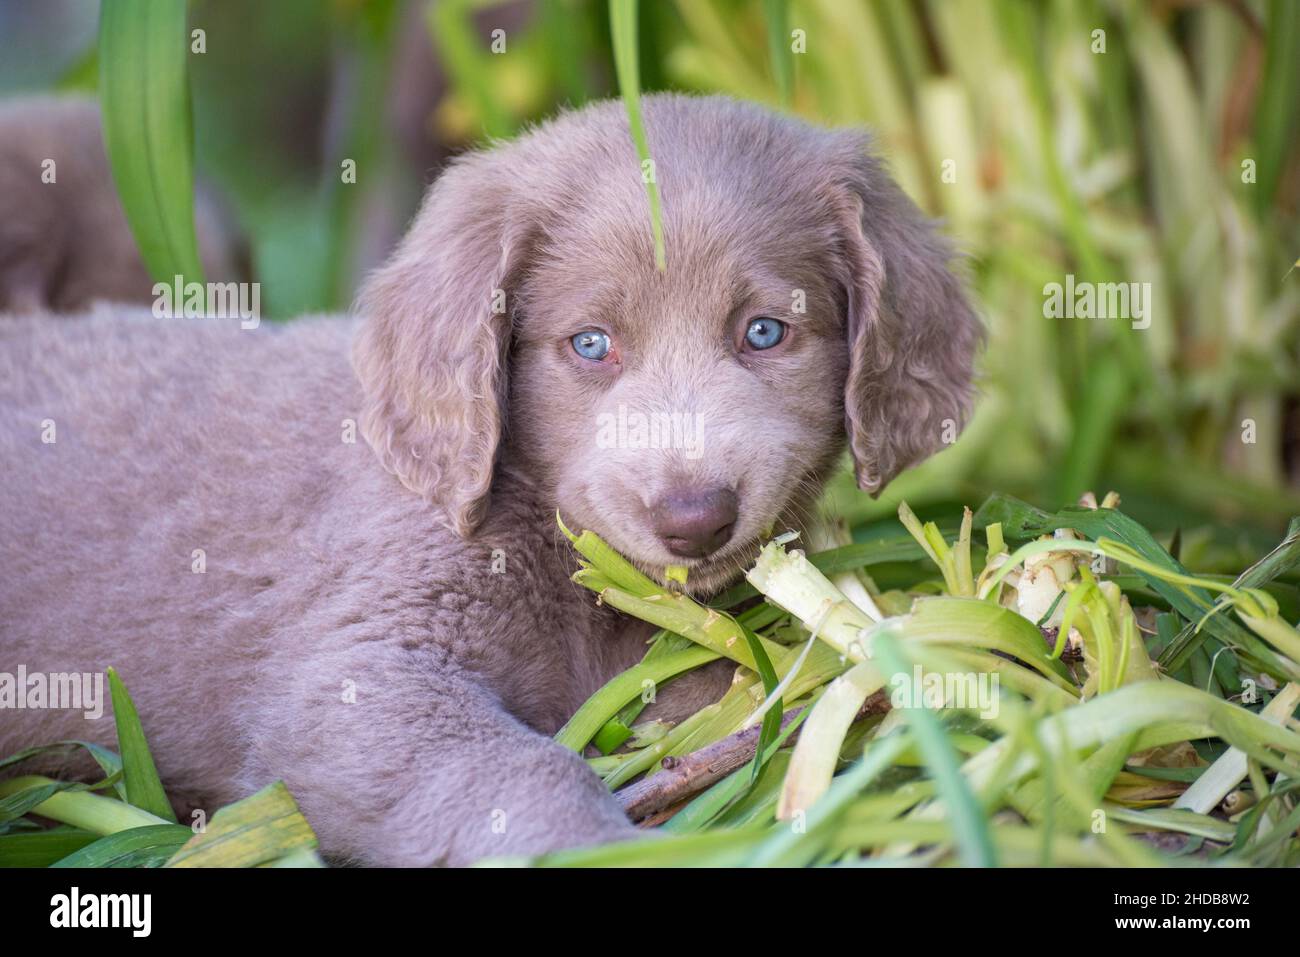 Porträt eines langhaarigen Weimaraner-Welpen, der auf der grünen Wiese  liegt. Der kleine Hund hat graues Fell und leuchtend blaue Augen.  Ahnentafel langhaarige Weimarane Stockfotografie - Alamy